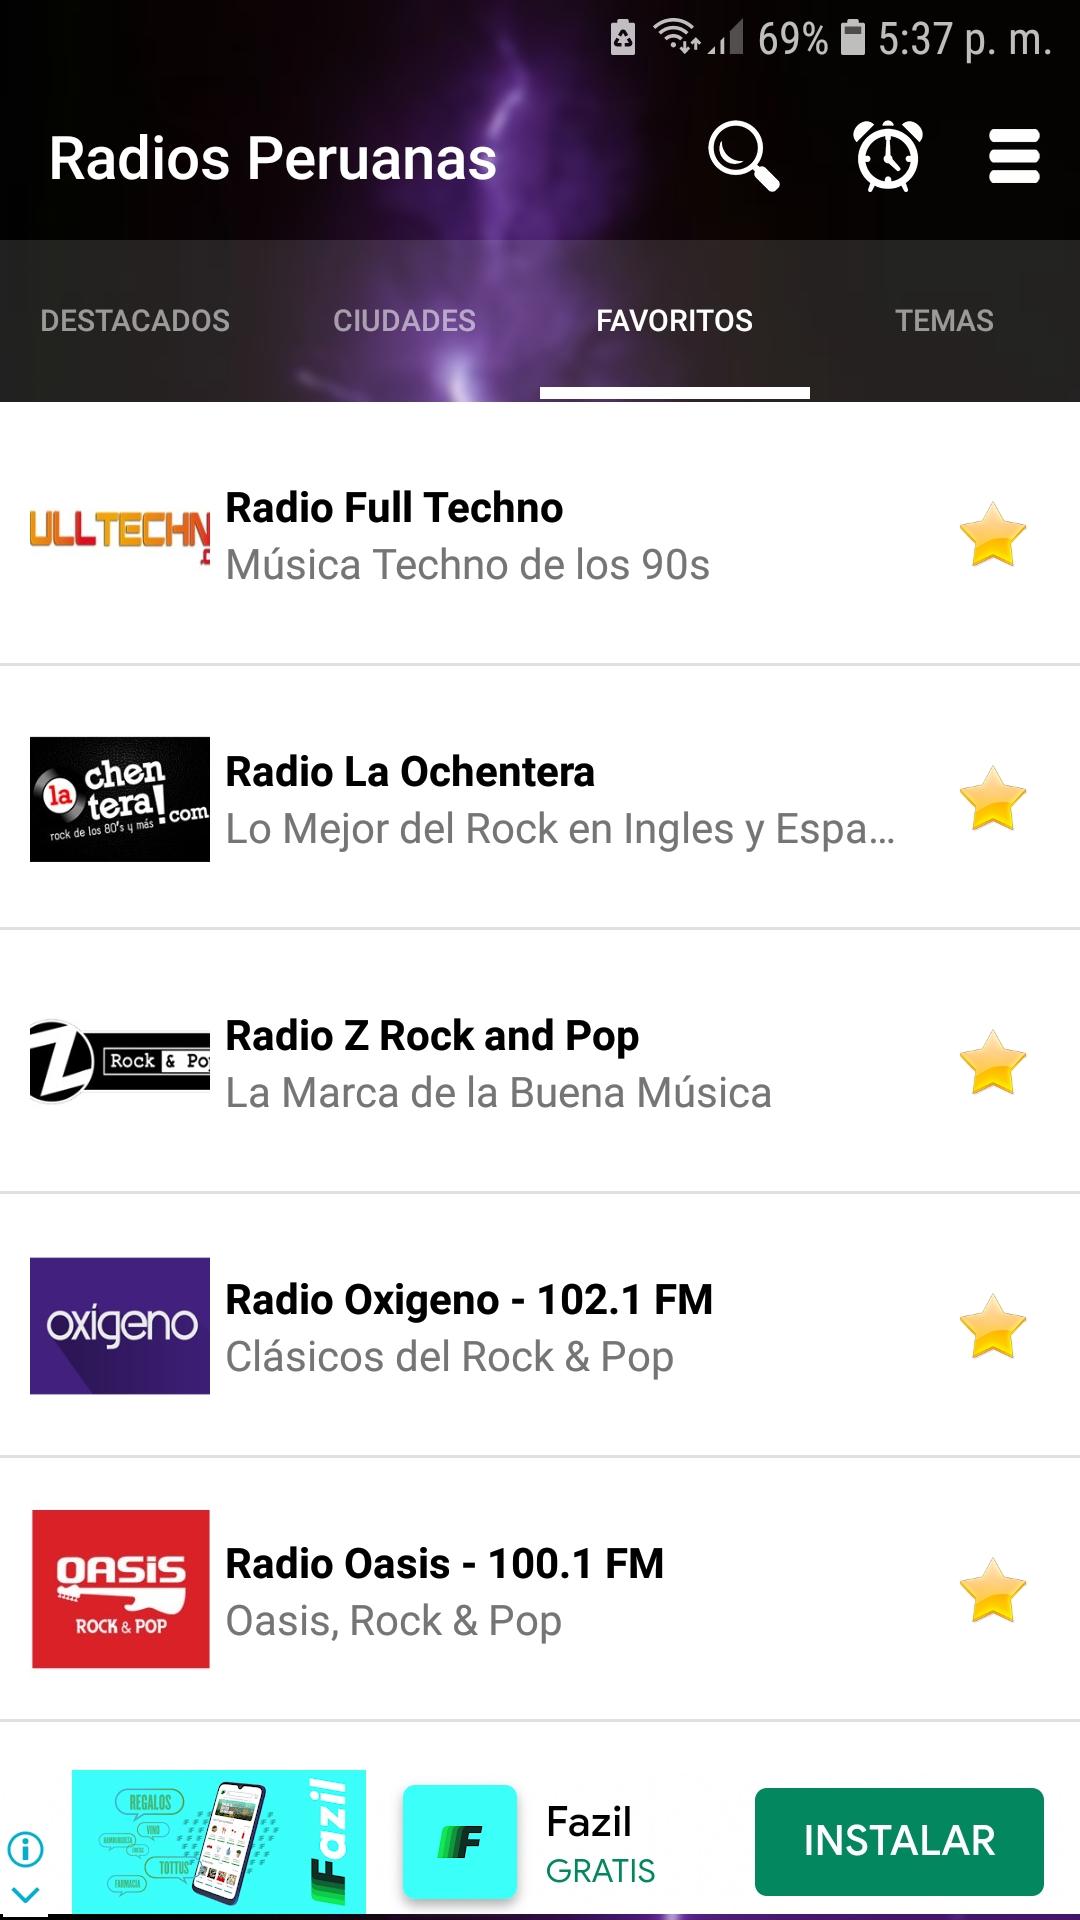 Radios del Peru 🎧 Radio Online✓ Radio en Vivo✓ for Android - APK Download